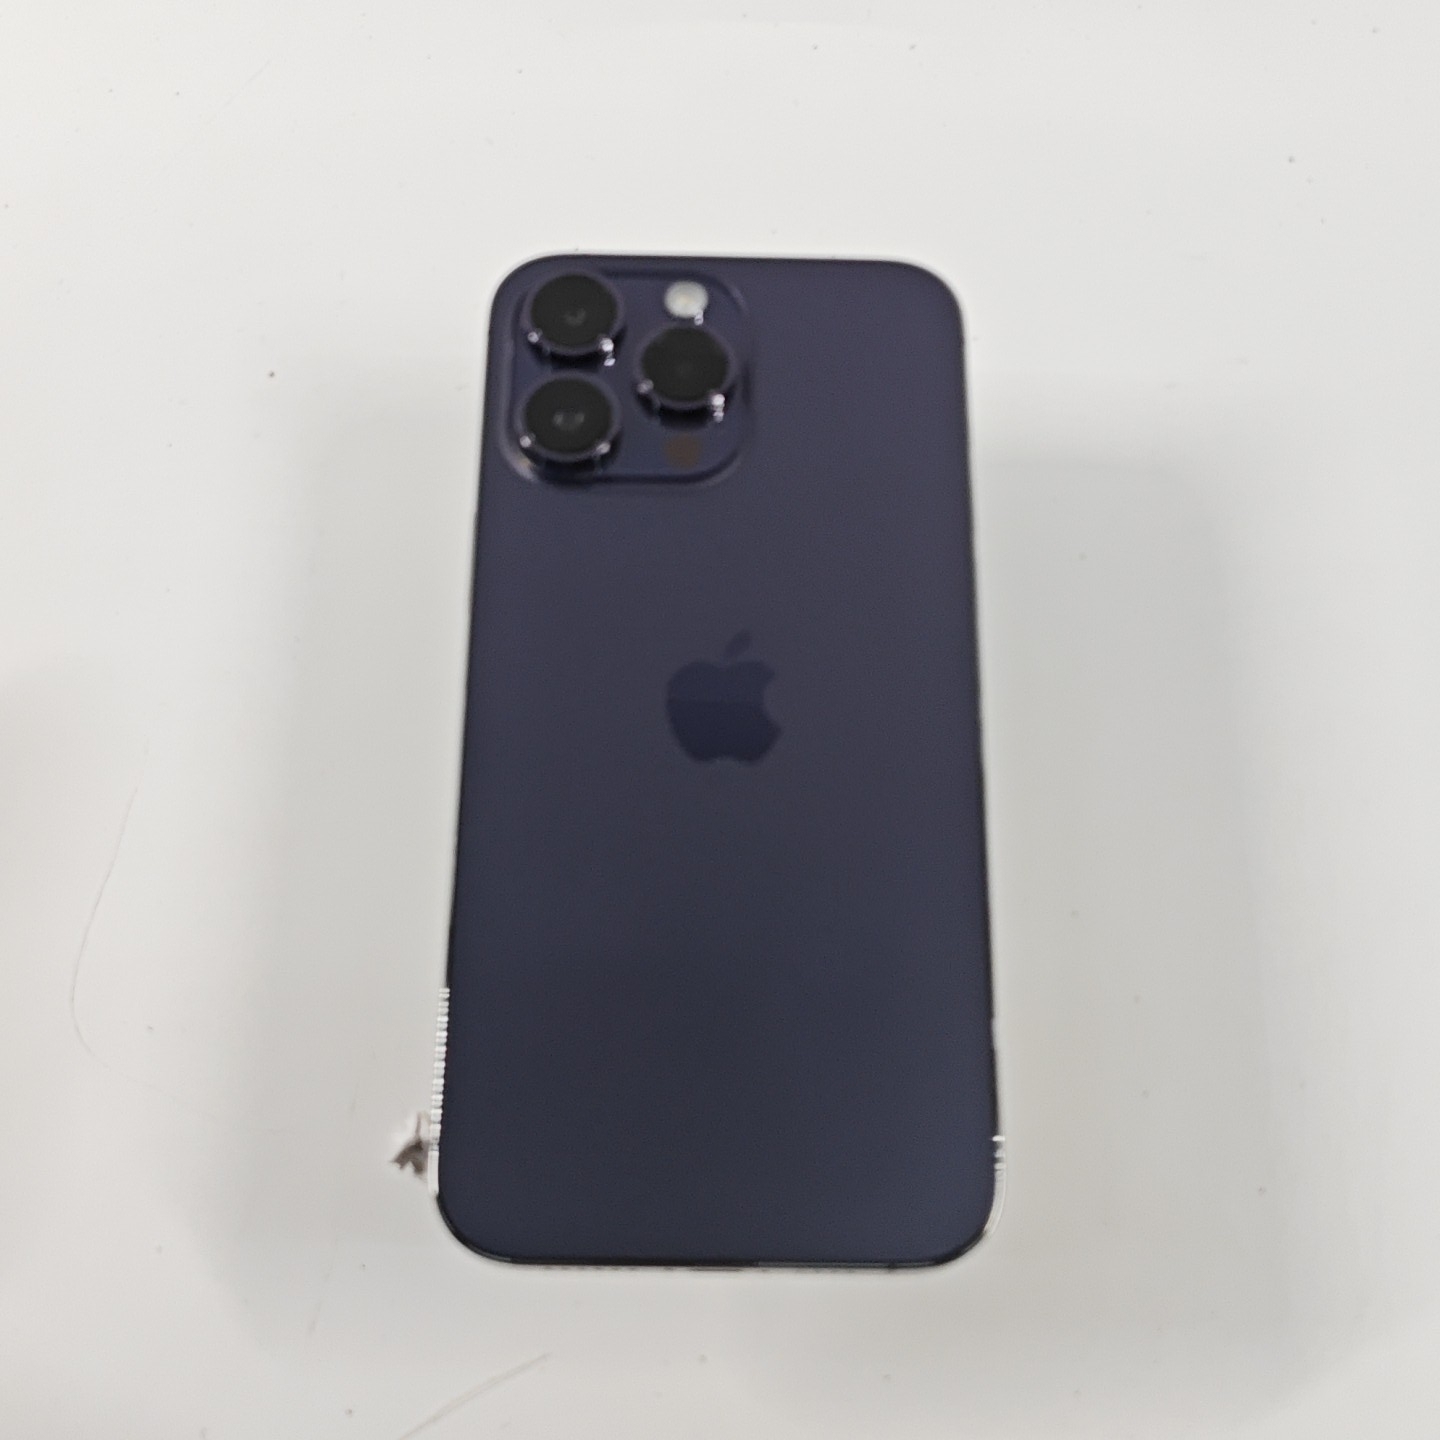 苹果【iPhone 14 Pro Max】5G全网通 暗紫色 256G 国行 9成新 